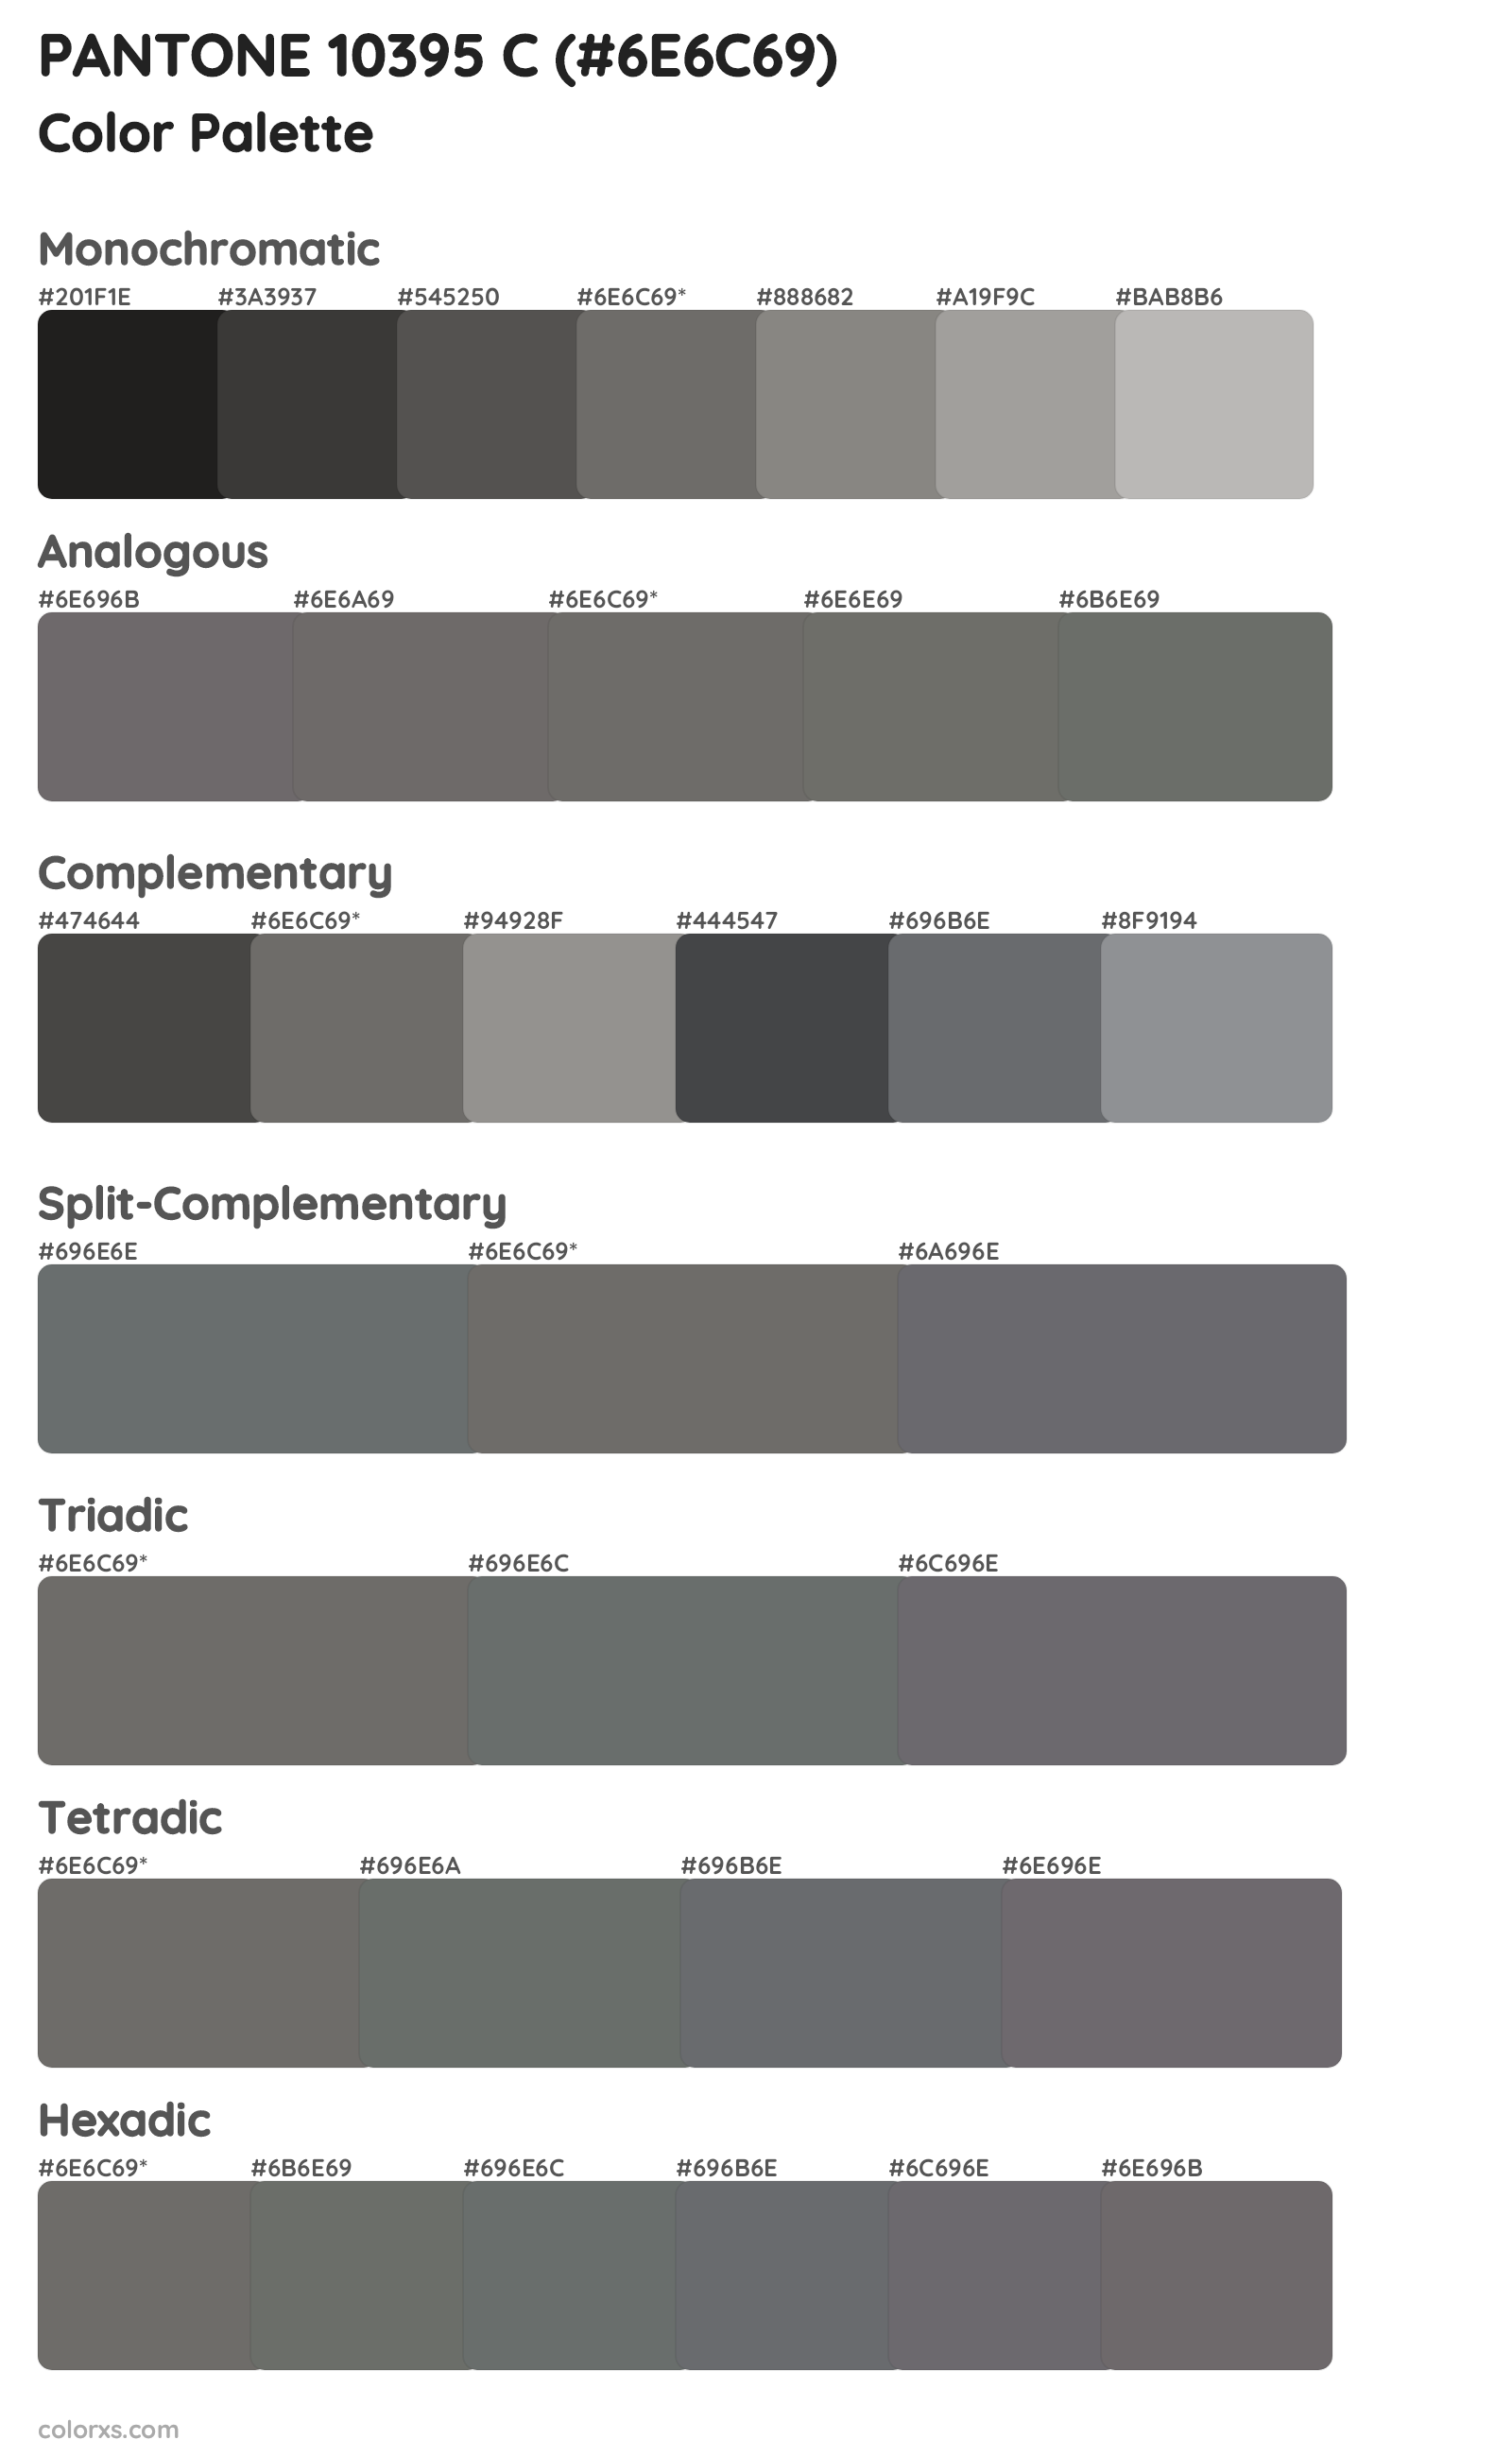 PANTONE 10395 C Color Scheme Palettes